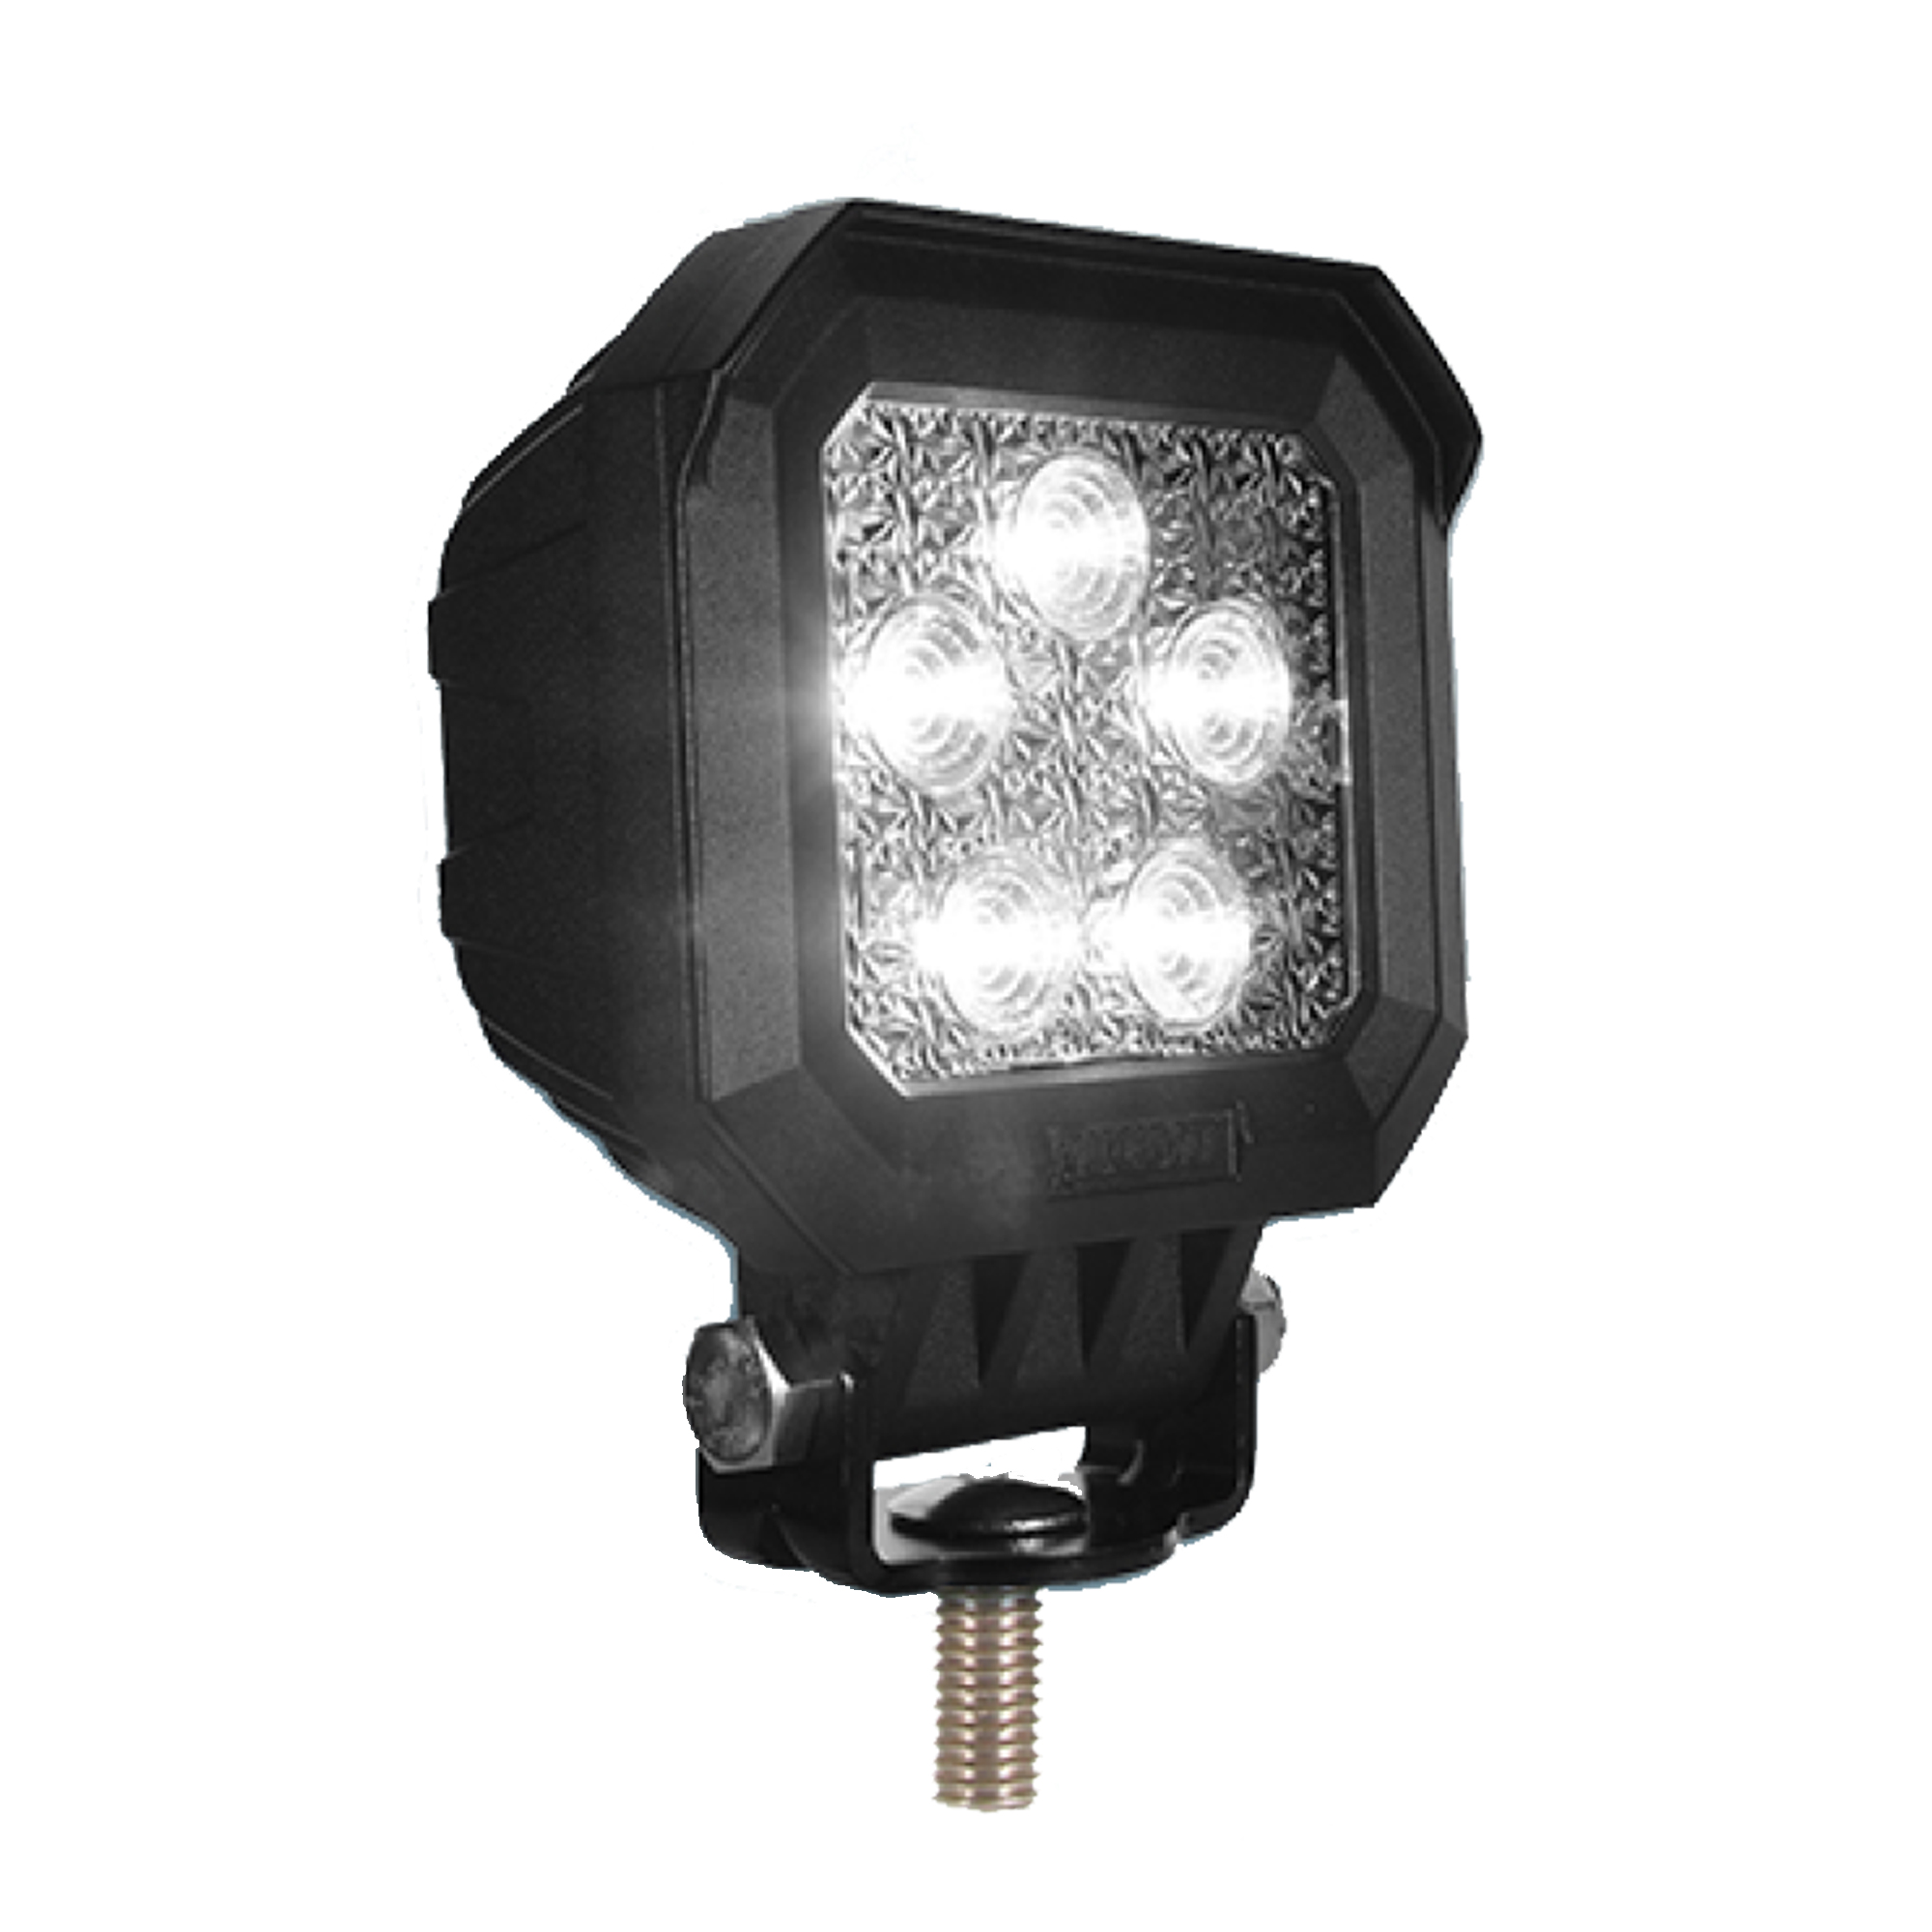 E-geprüfter LED Hauptscheinwerfer mit Scheibenheizung 12/24V und